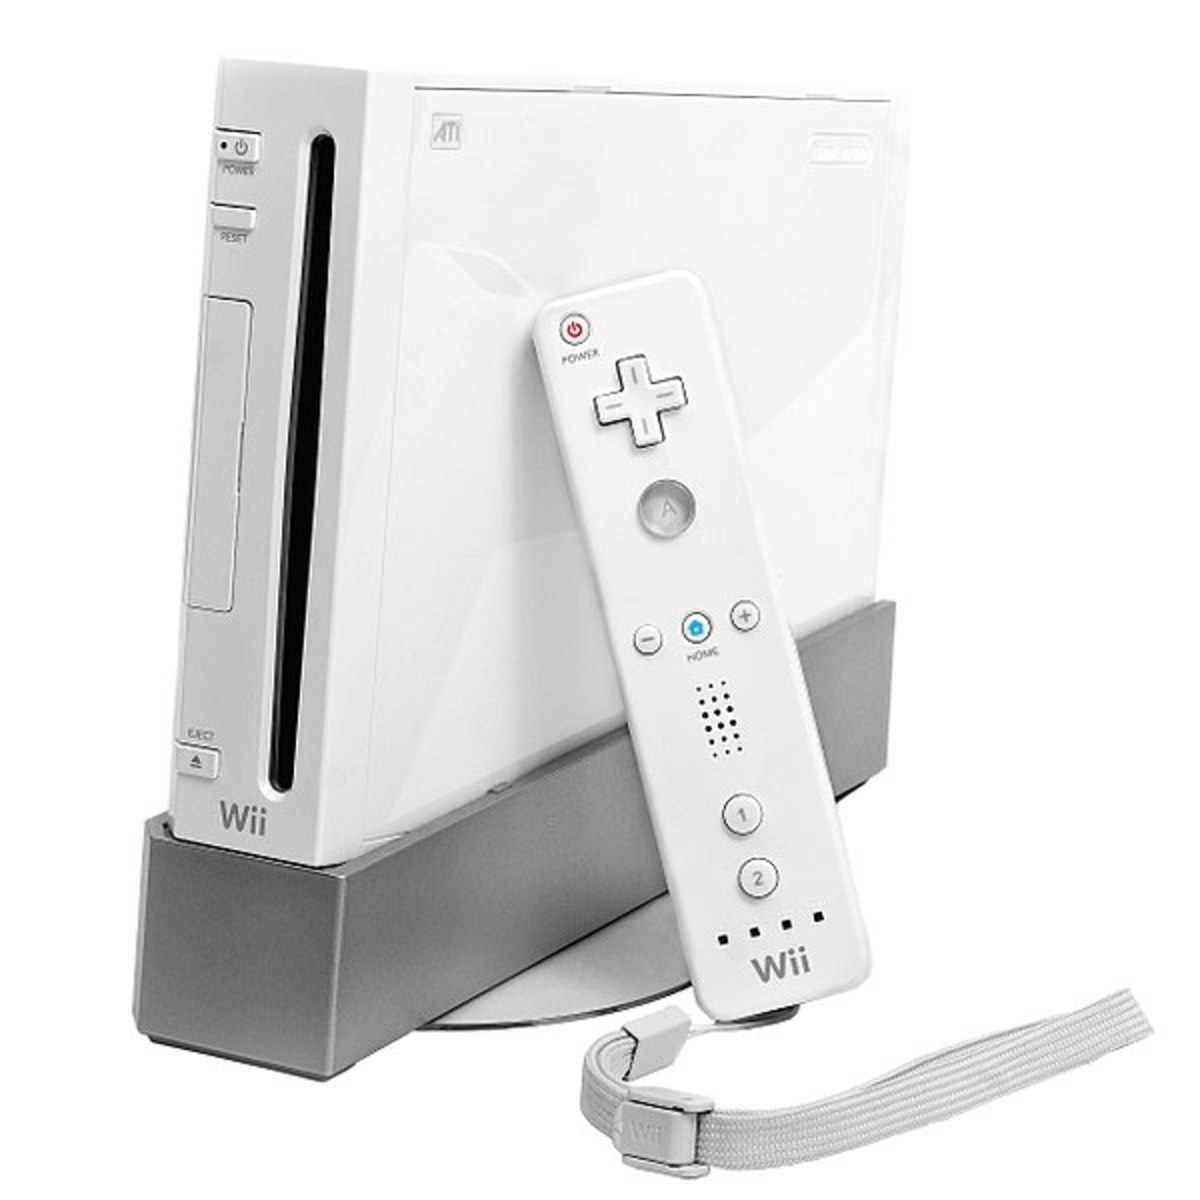 How I Came to Appreciate the Nintendo Wii